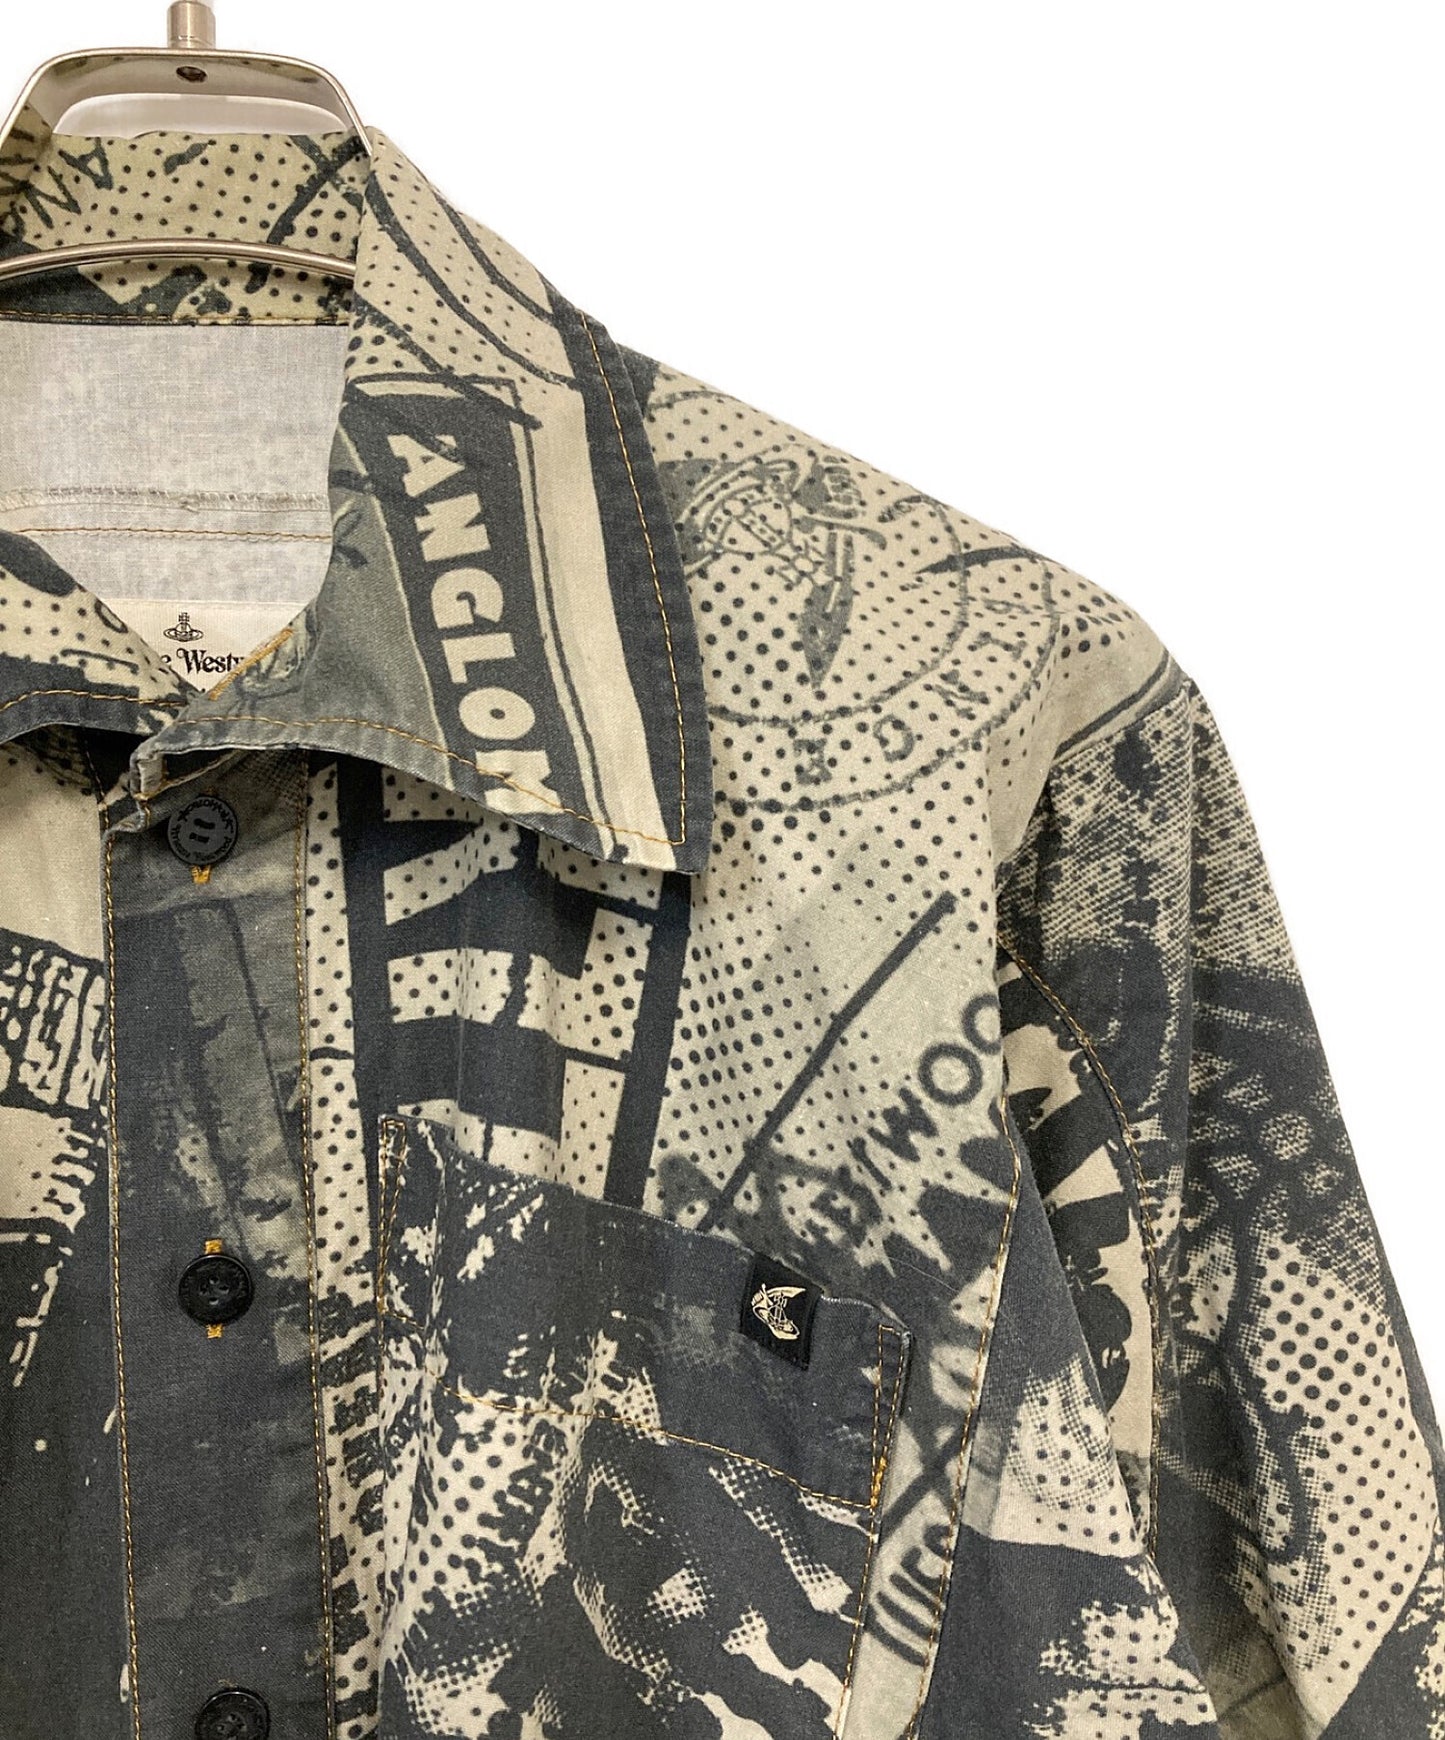 ชุดเสื้อ Vivienne Westwood Anglomania ที่มีทั่วทุกรูปแบบ 15-01-591001